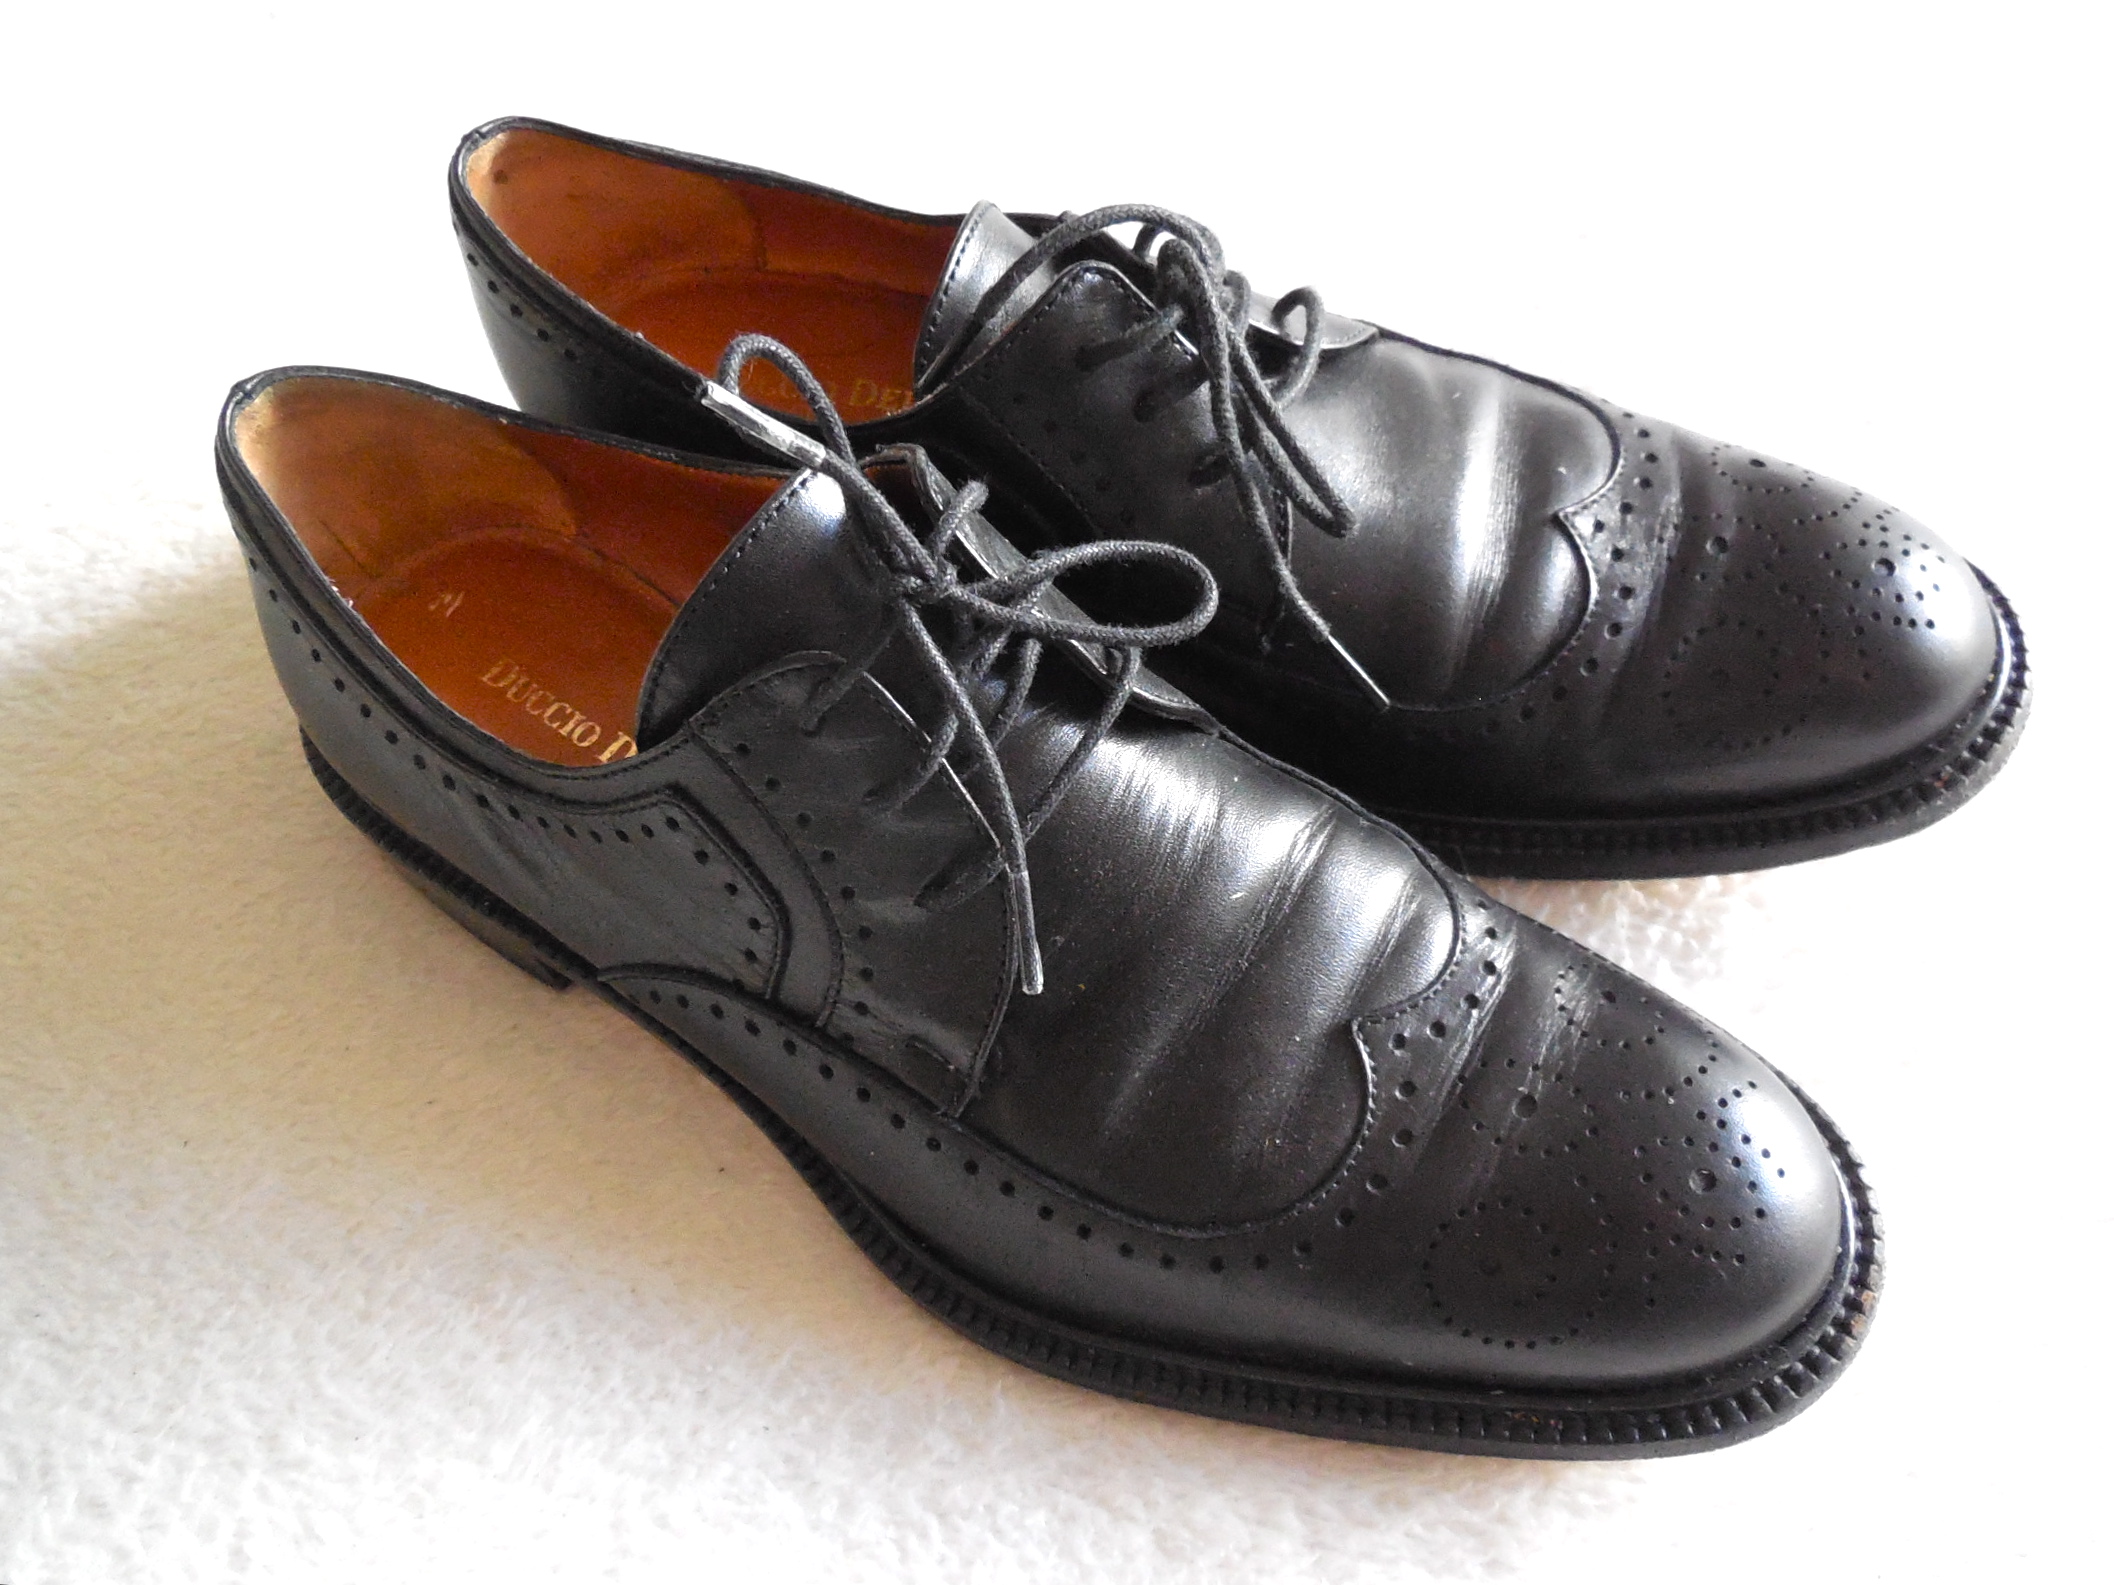 Duccio Del Duca Milano Black Leather Oxford Shoes / Size 36.5